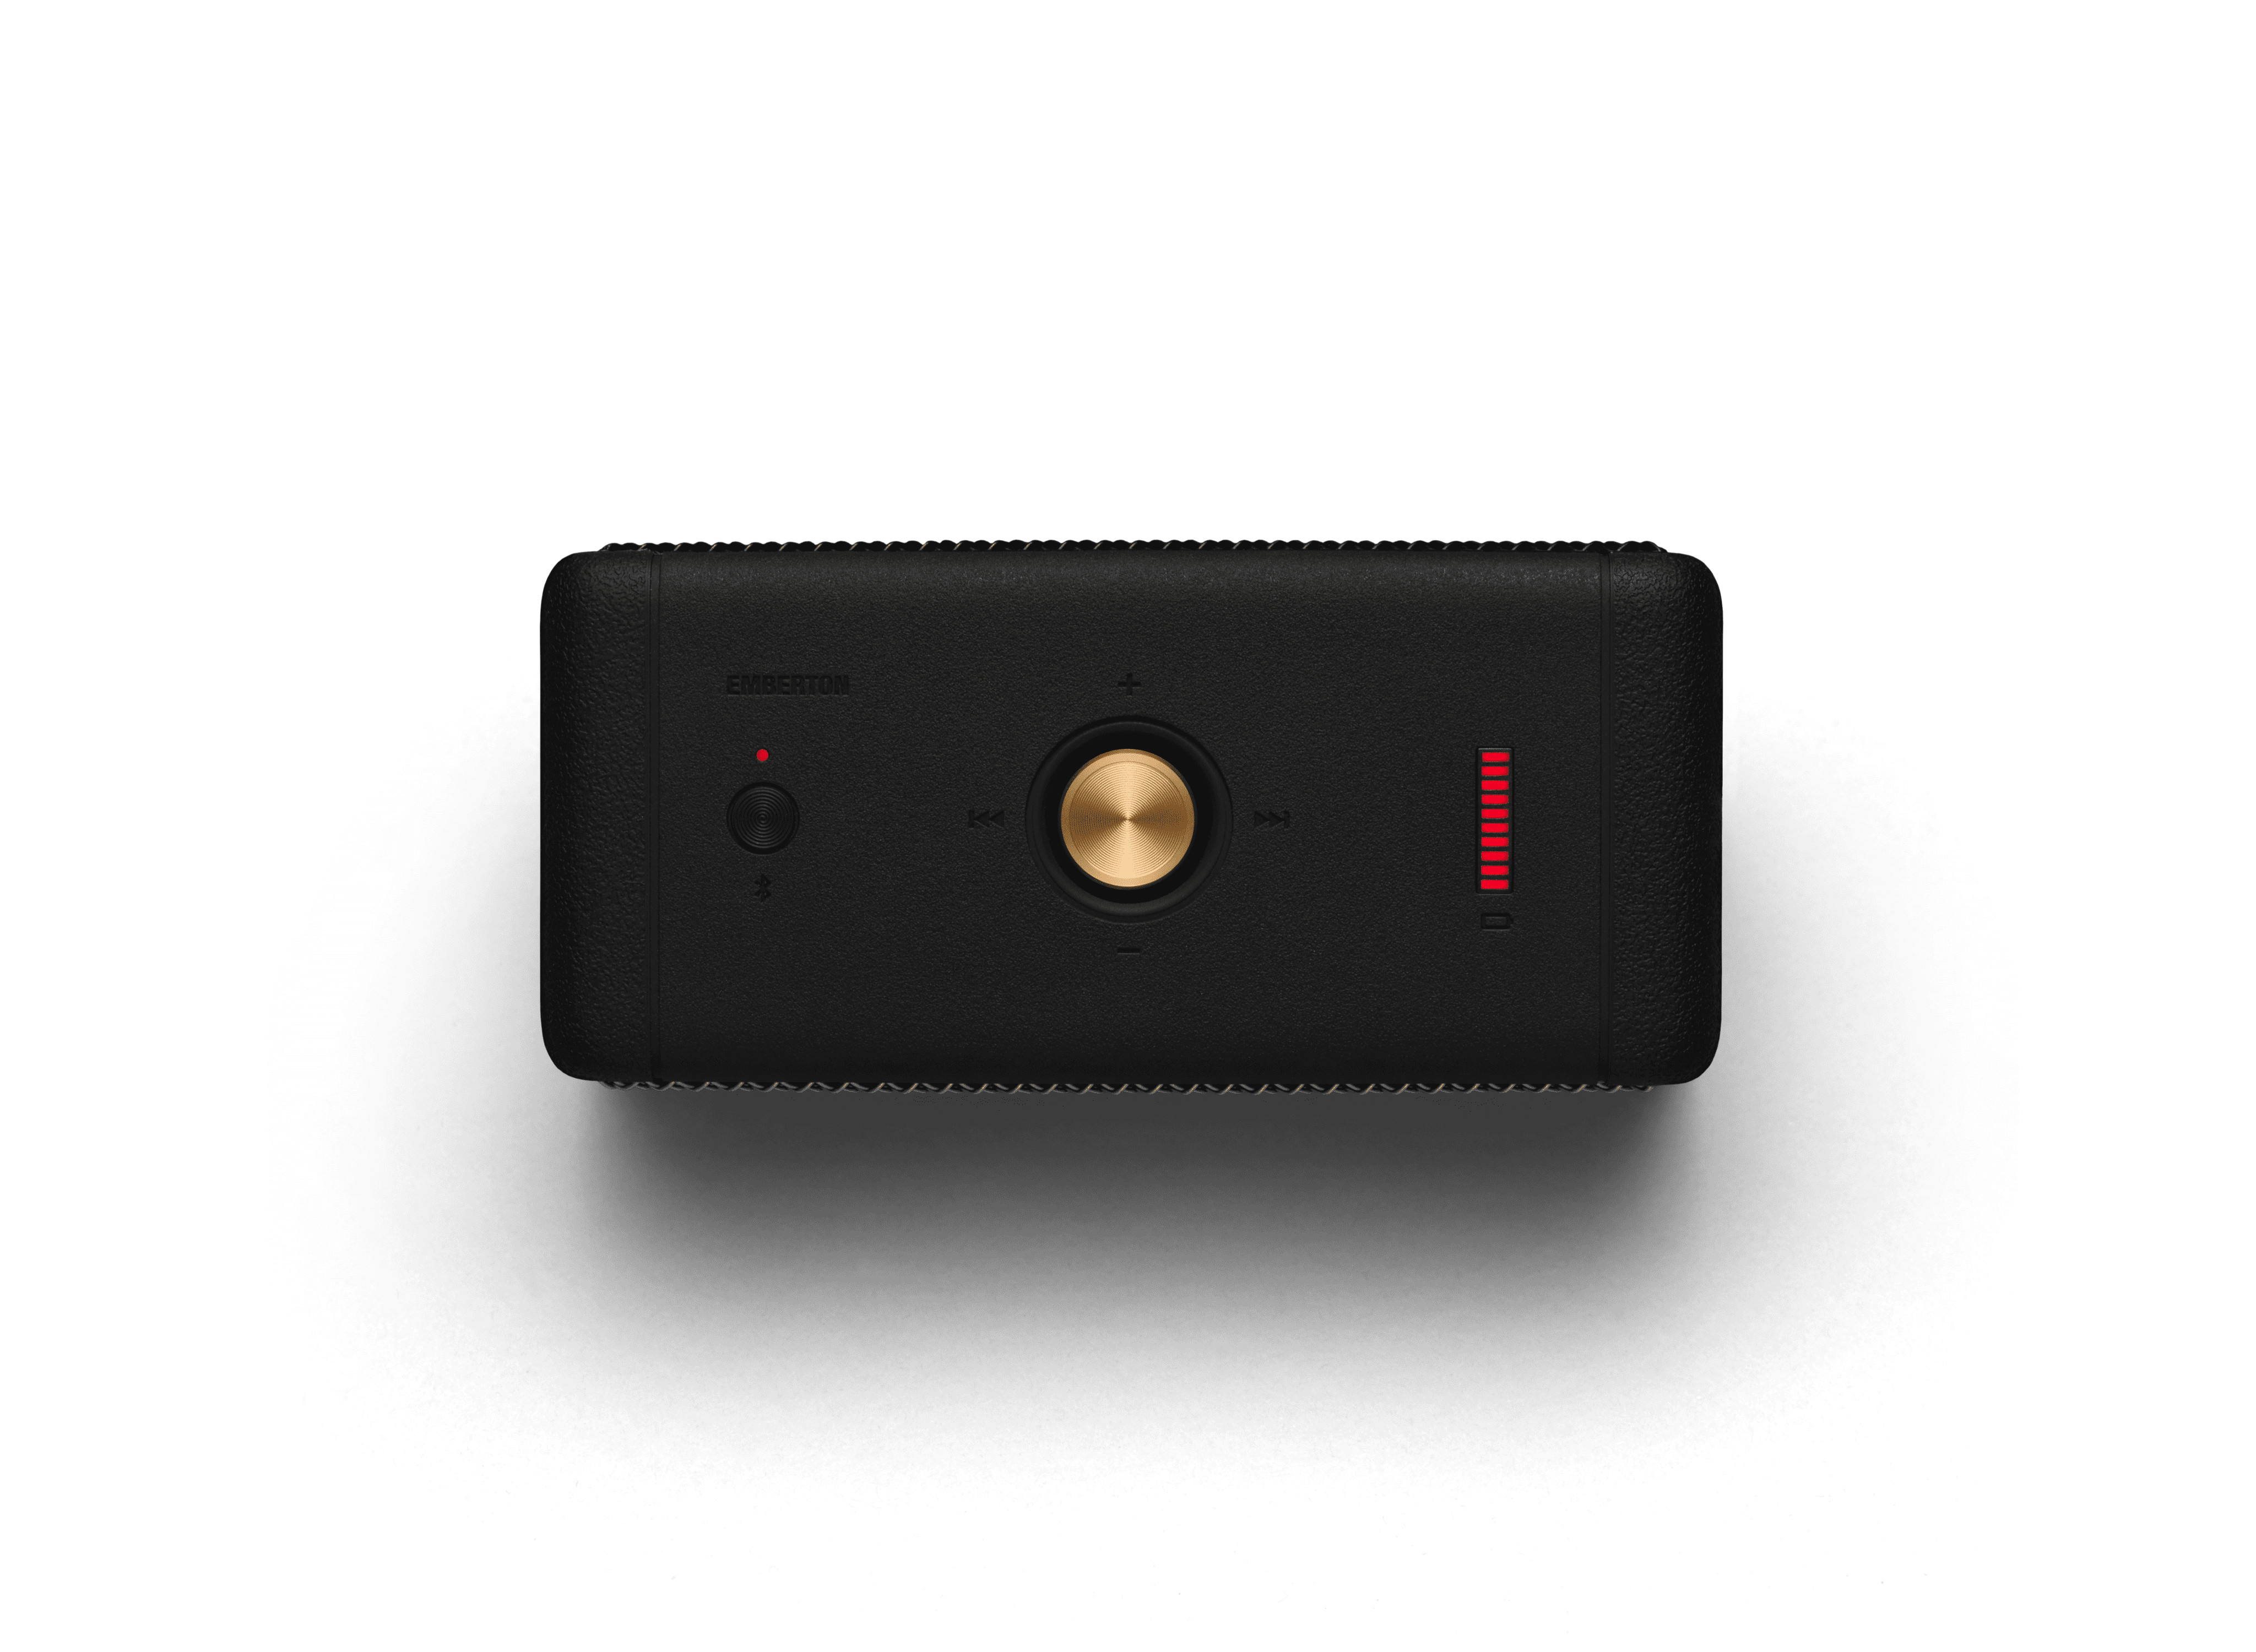 Marshall Emberton Bluetooth Portable Speaker - India